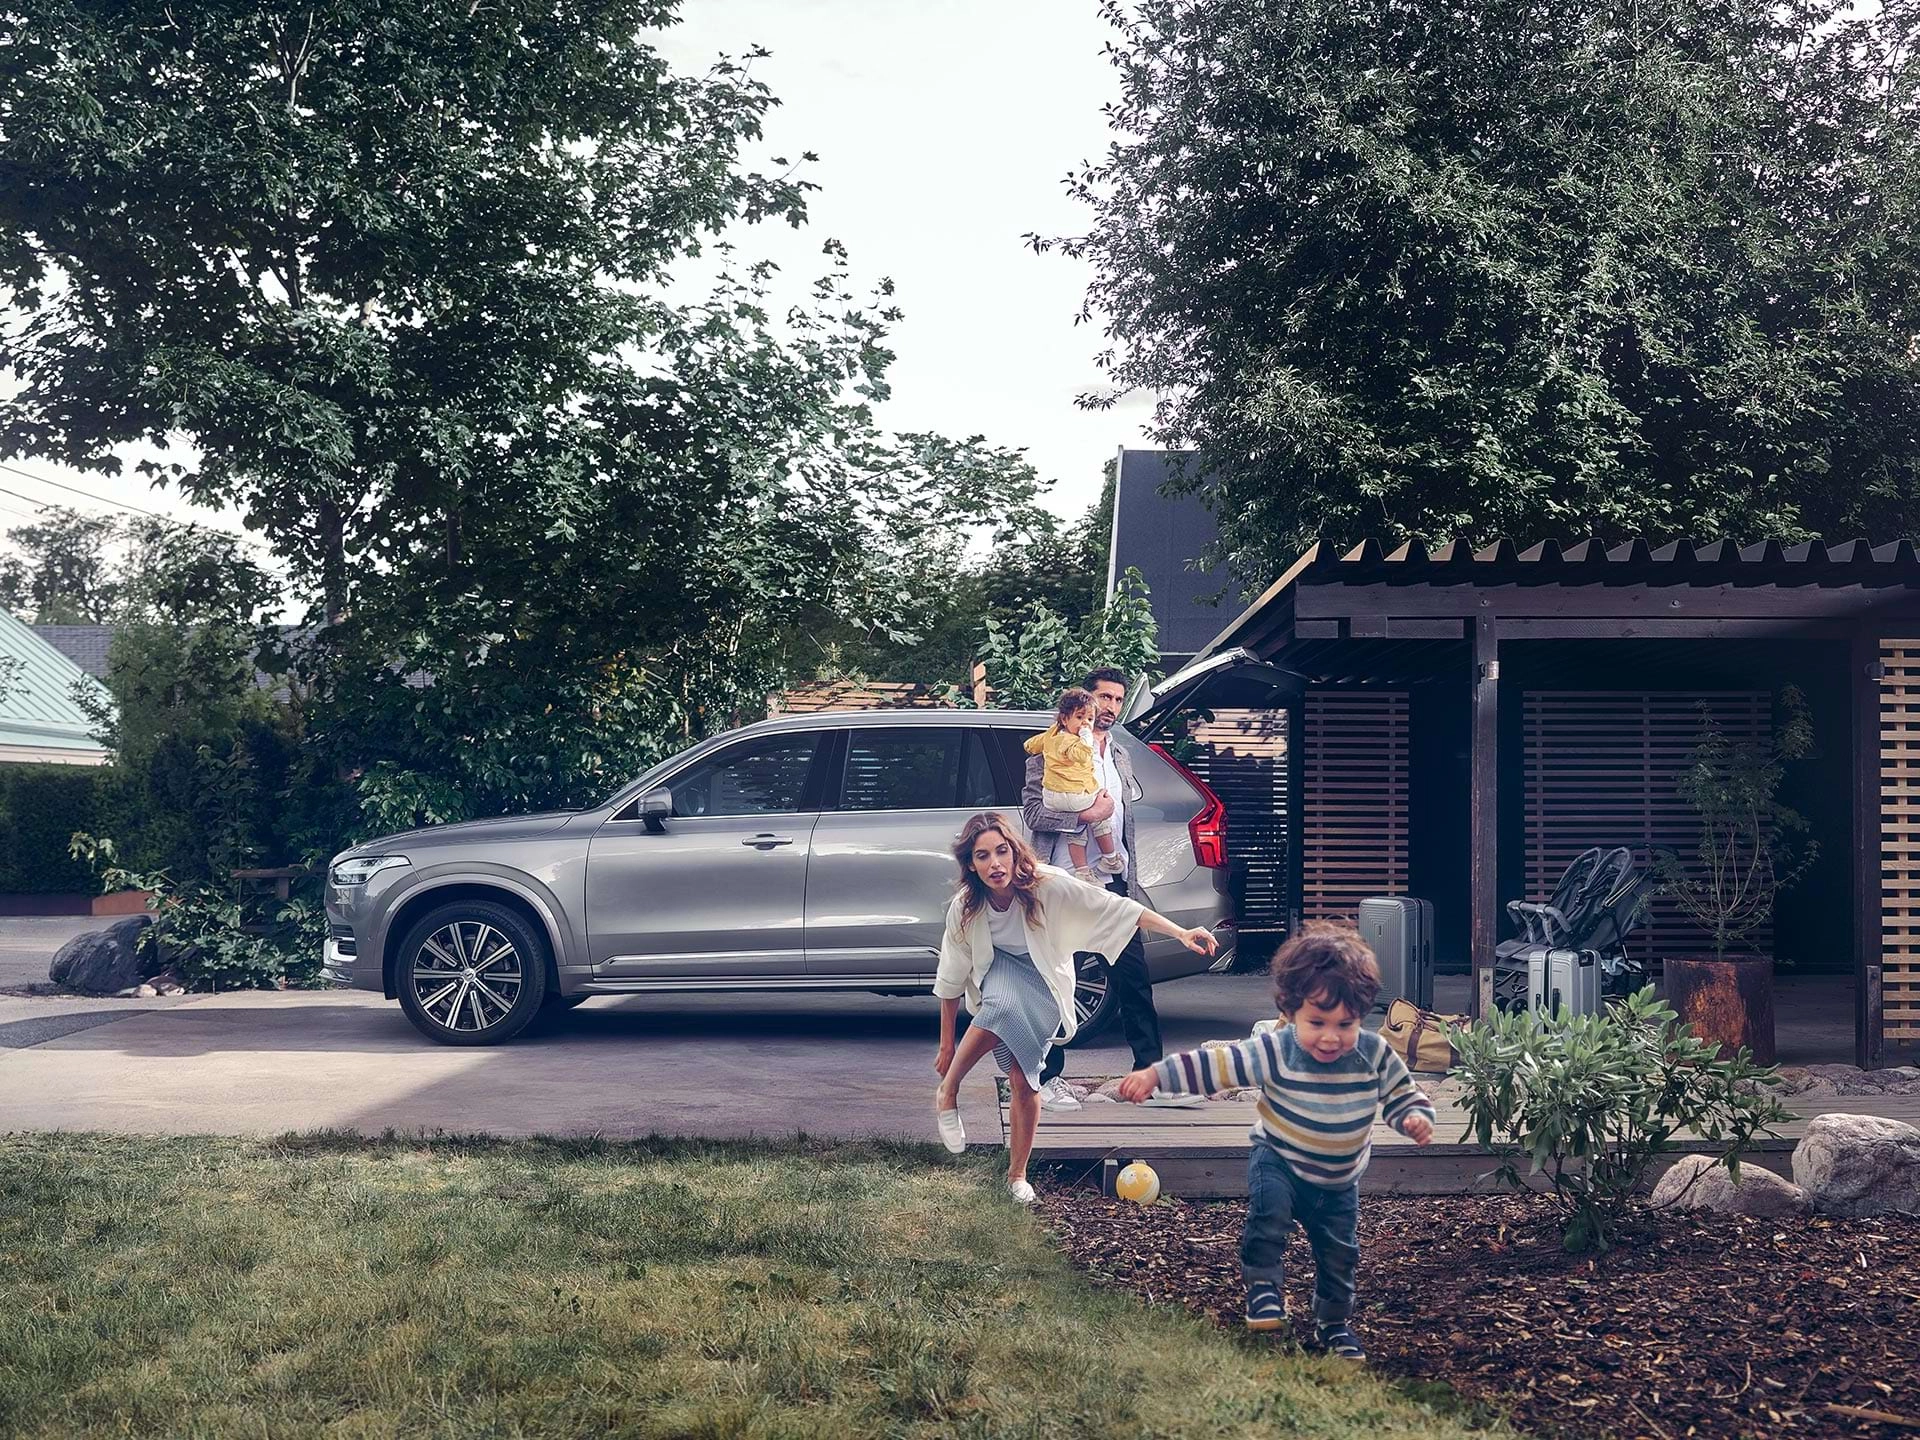 გარეუბანში მცხოვრები ოჯახი Volvo-ს SUV-ით მოგზაურობისთვის ემზადება, ეზოში მირბის ბავშვი, რომელსაც დედა მისდევს.